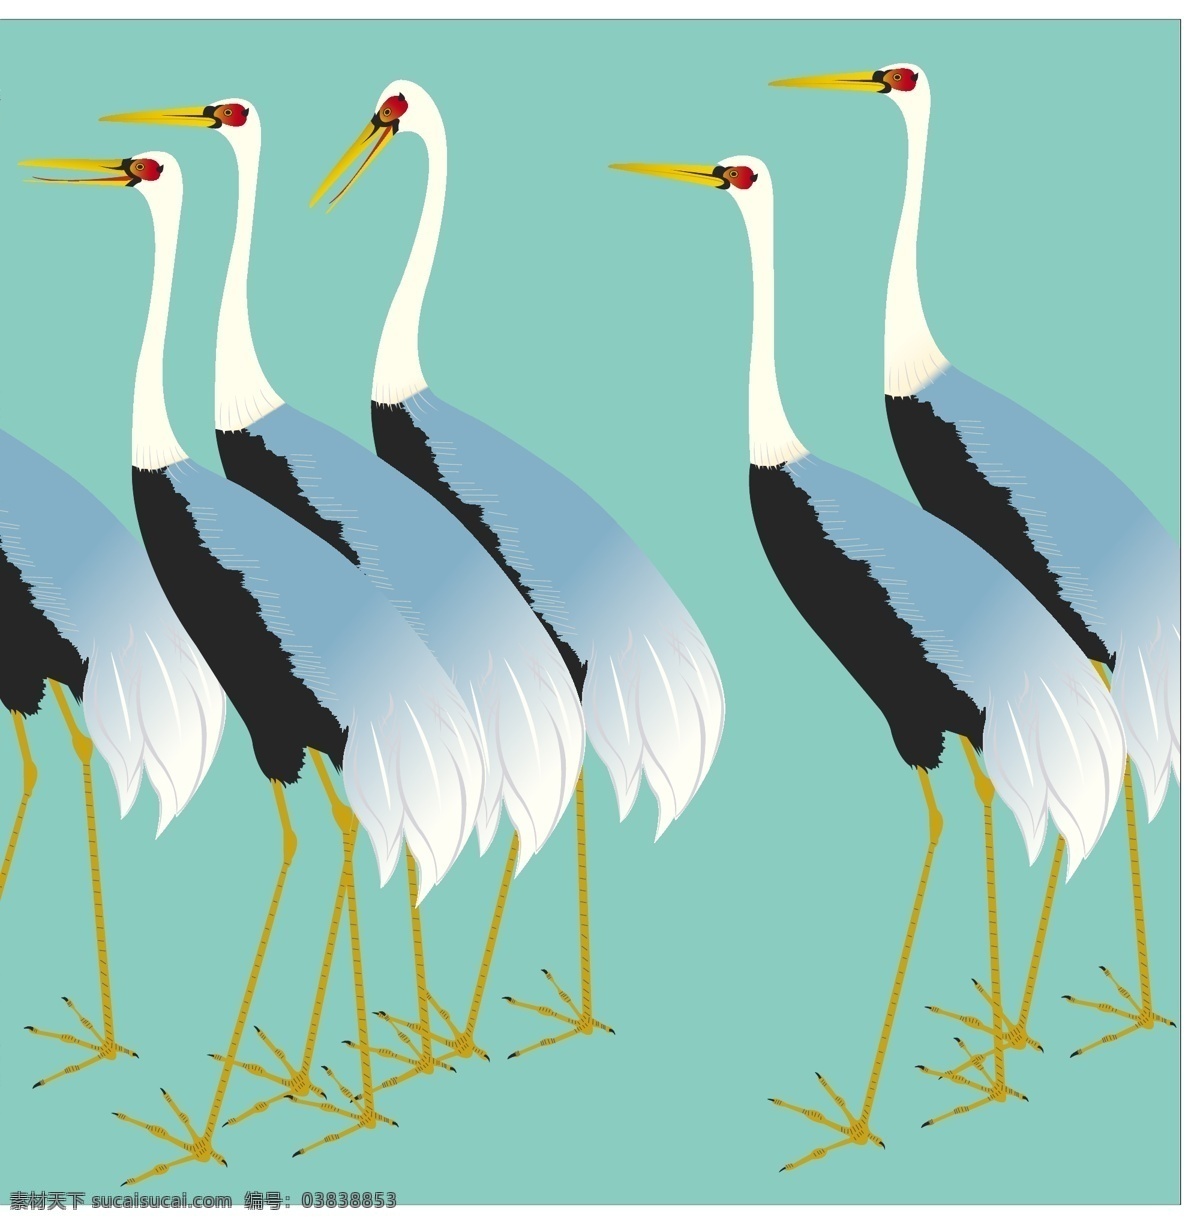 一群白鹤 设计素材 小鸟 设计元素 矢量素材 装饰素材 白鹤 火鹤 装饰图案